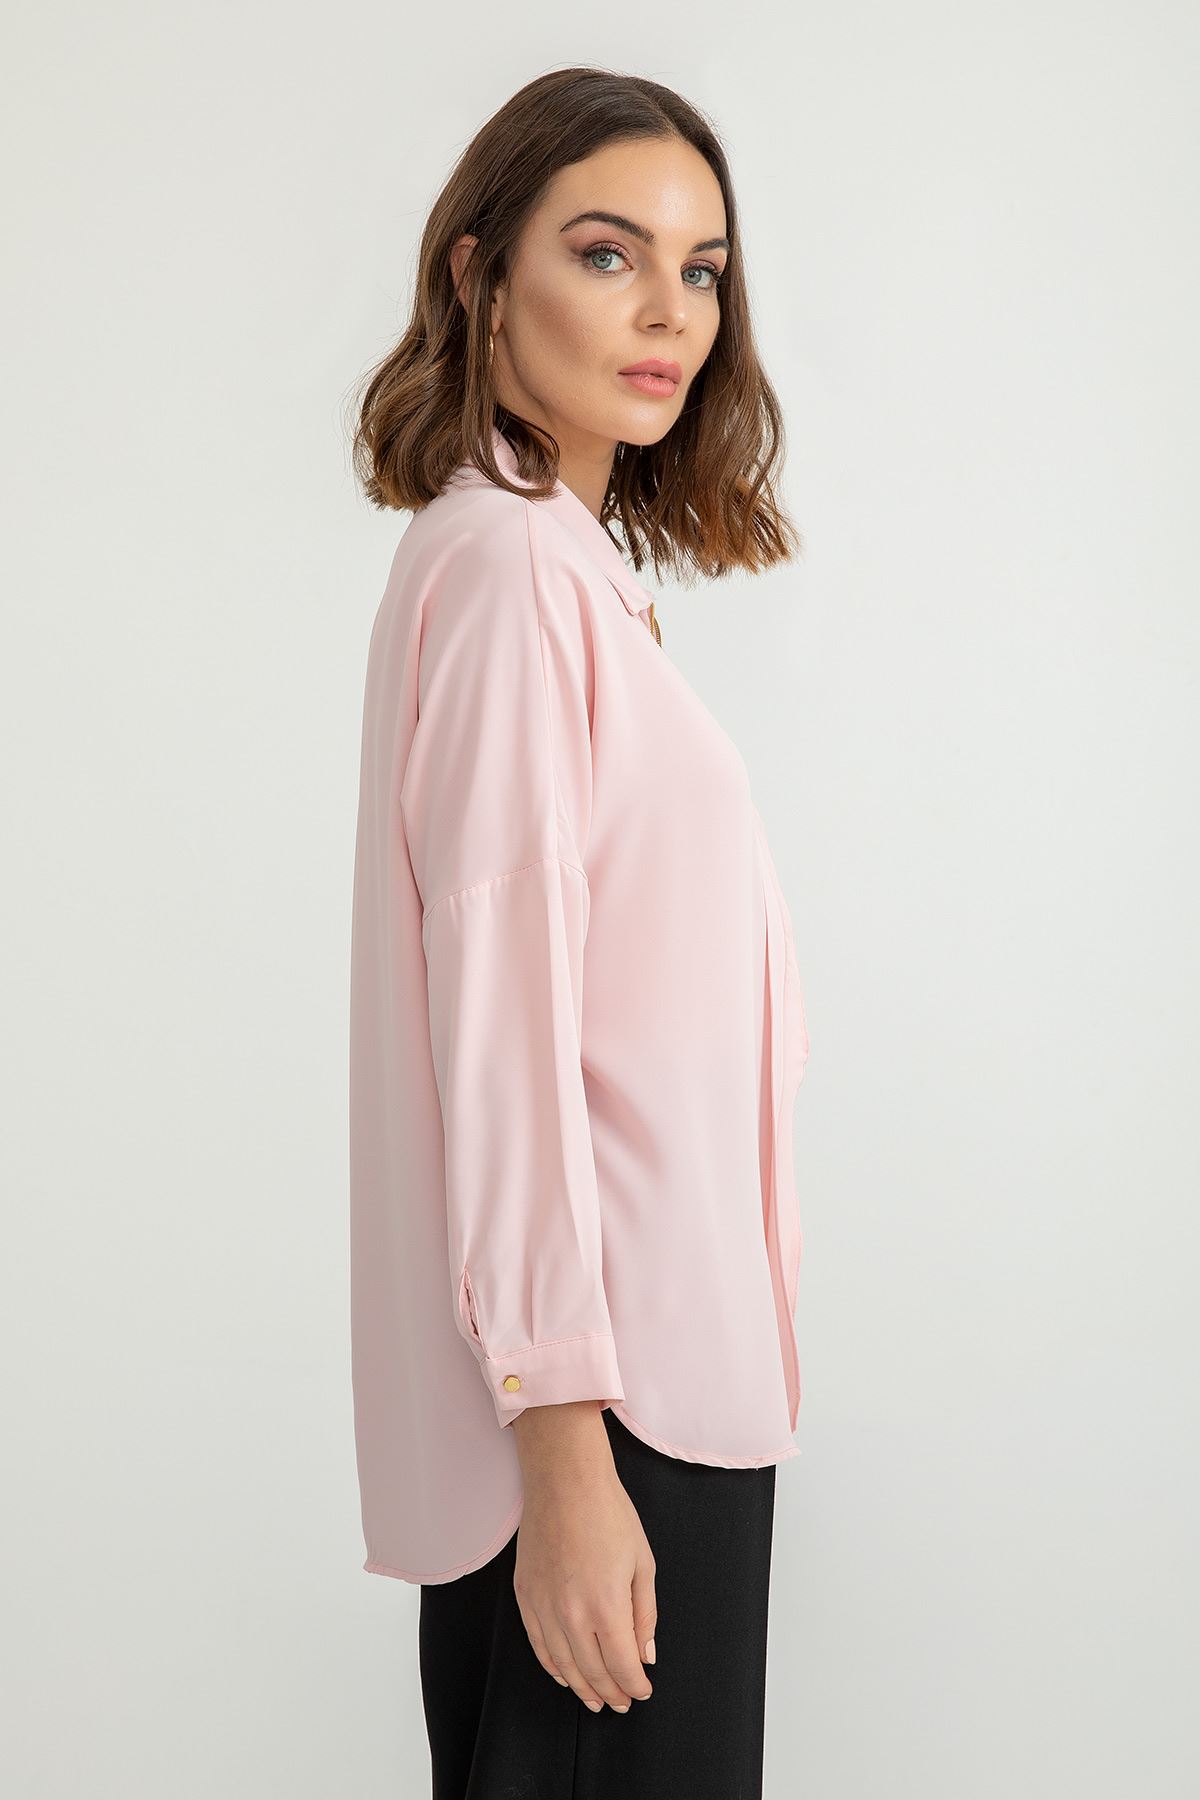 Jesica Fabric Long Sleeve Hip Height Wide Zip Front Women'S Shirt - Light Pink